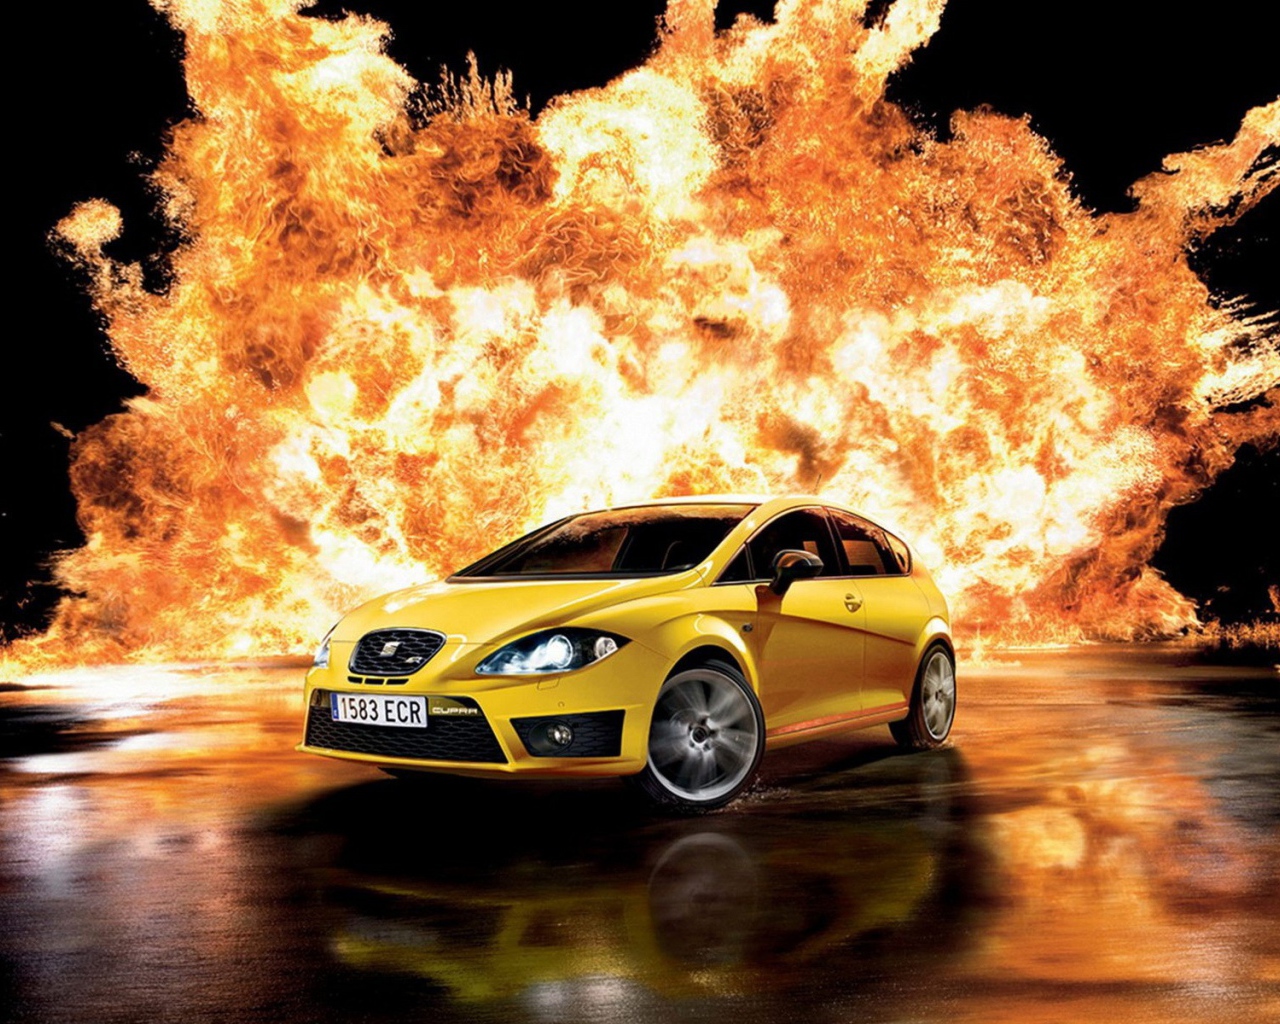 Автомобиль и огонь